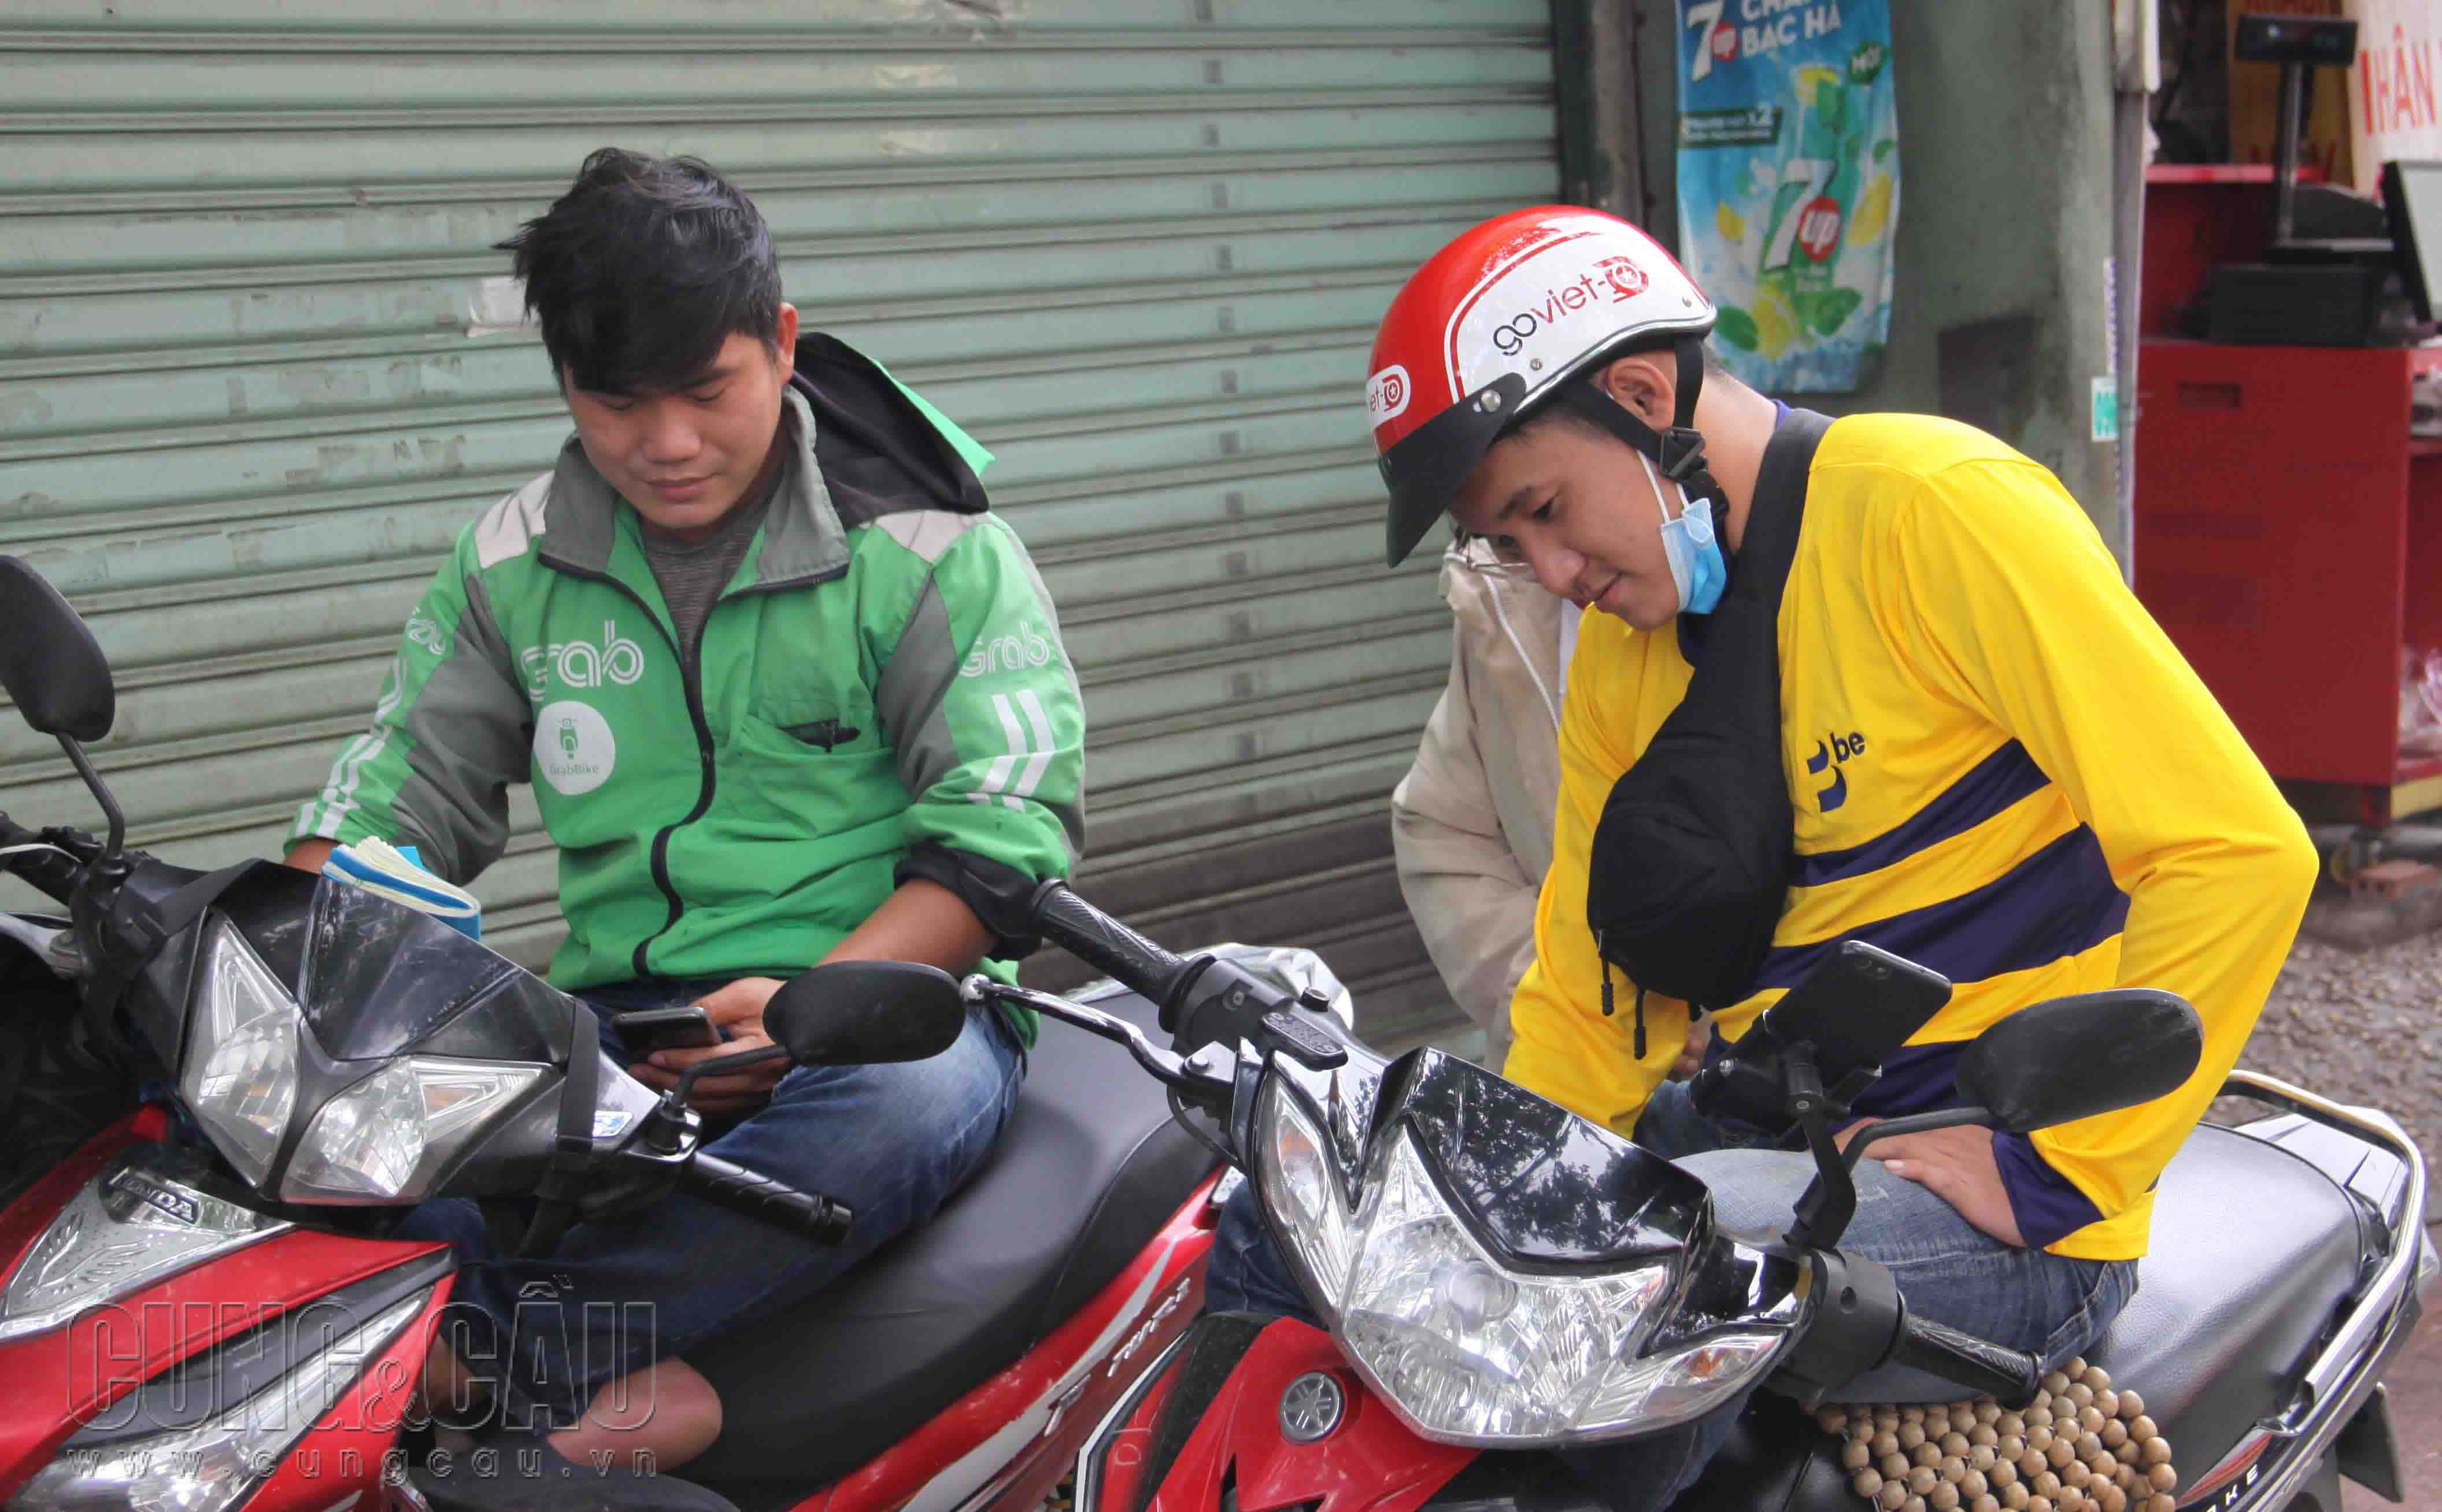 Grab, Go Việt và Be là ba cái tên lớn đang hoạt động trong thị trường gọi xe công nghệ tại Việt Nam.